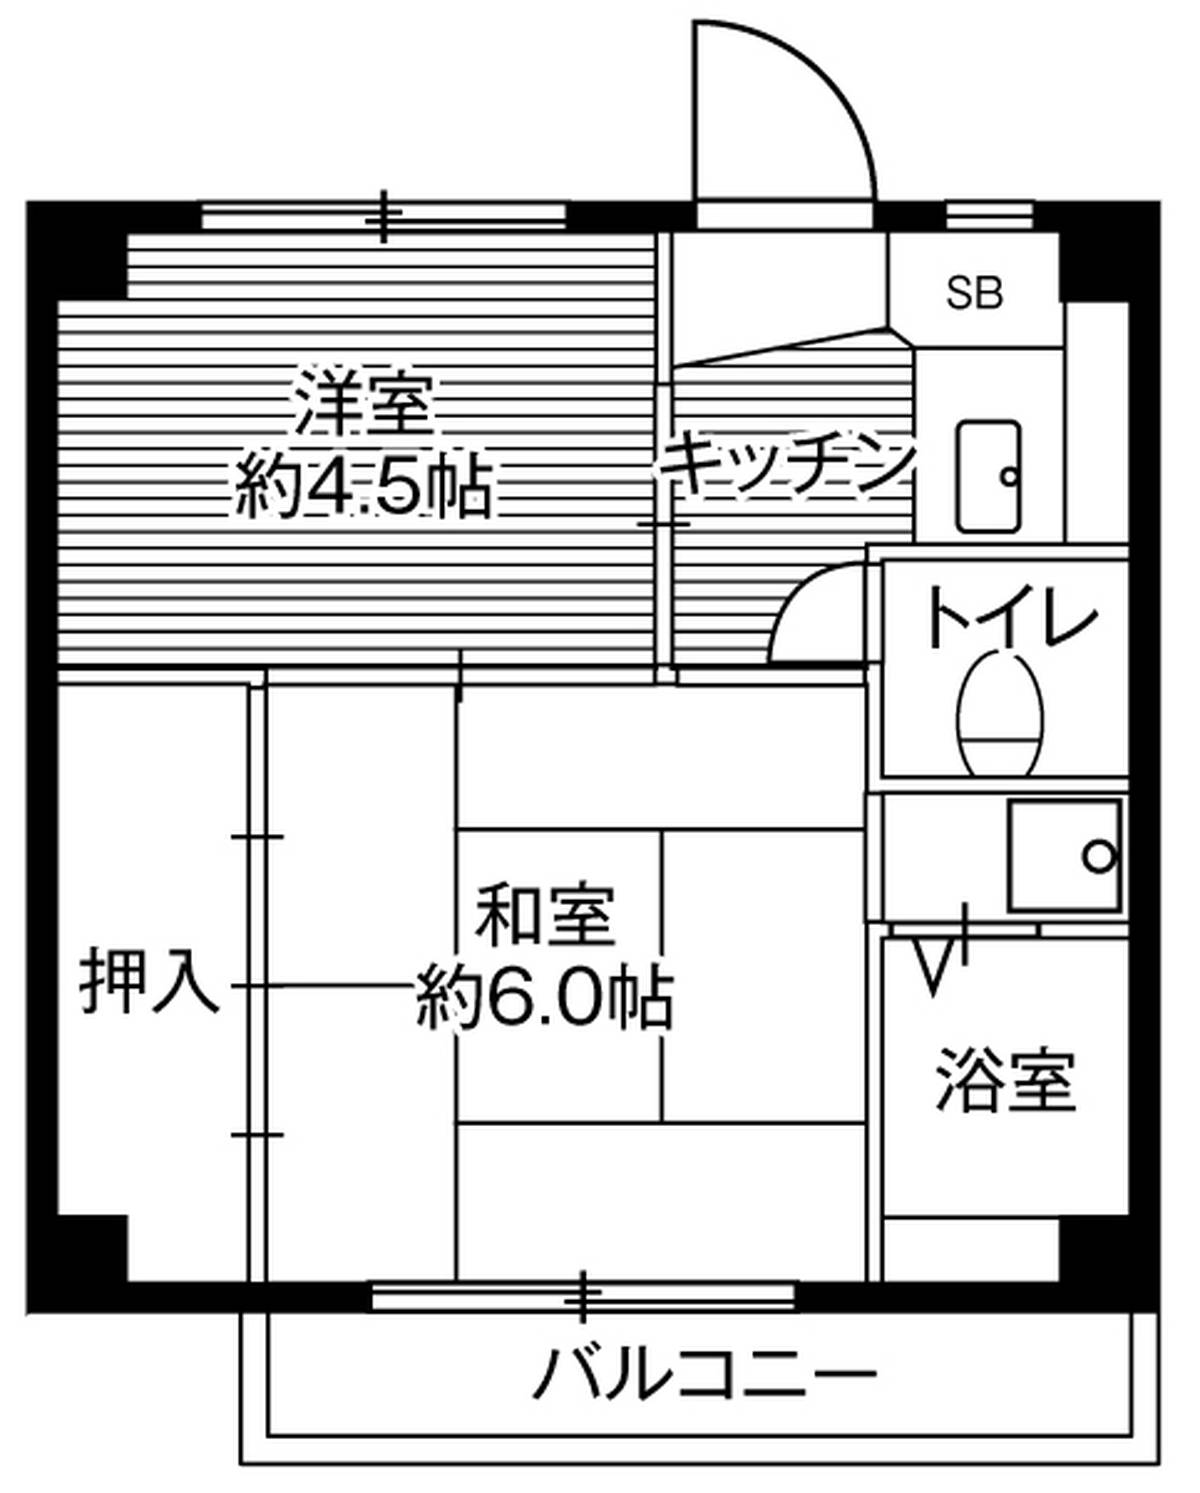 Sơ đồ phòng 2K của Village House Kawaijuku ở Asahi-ku